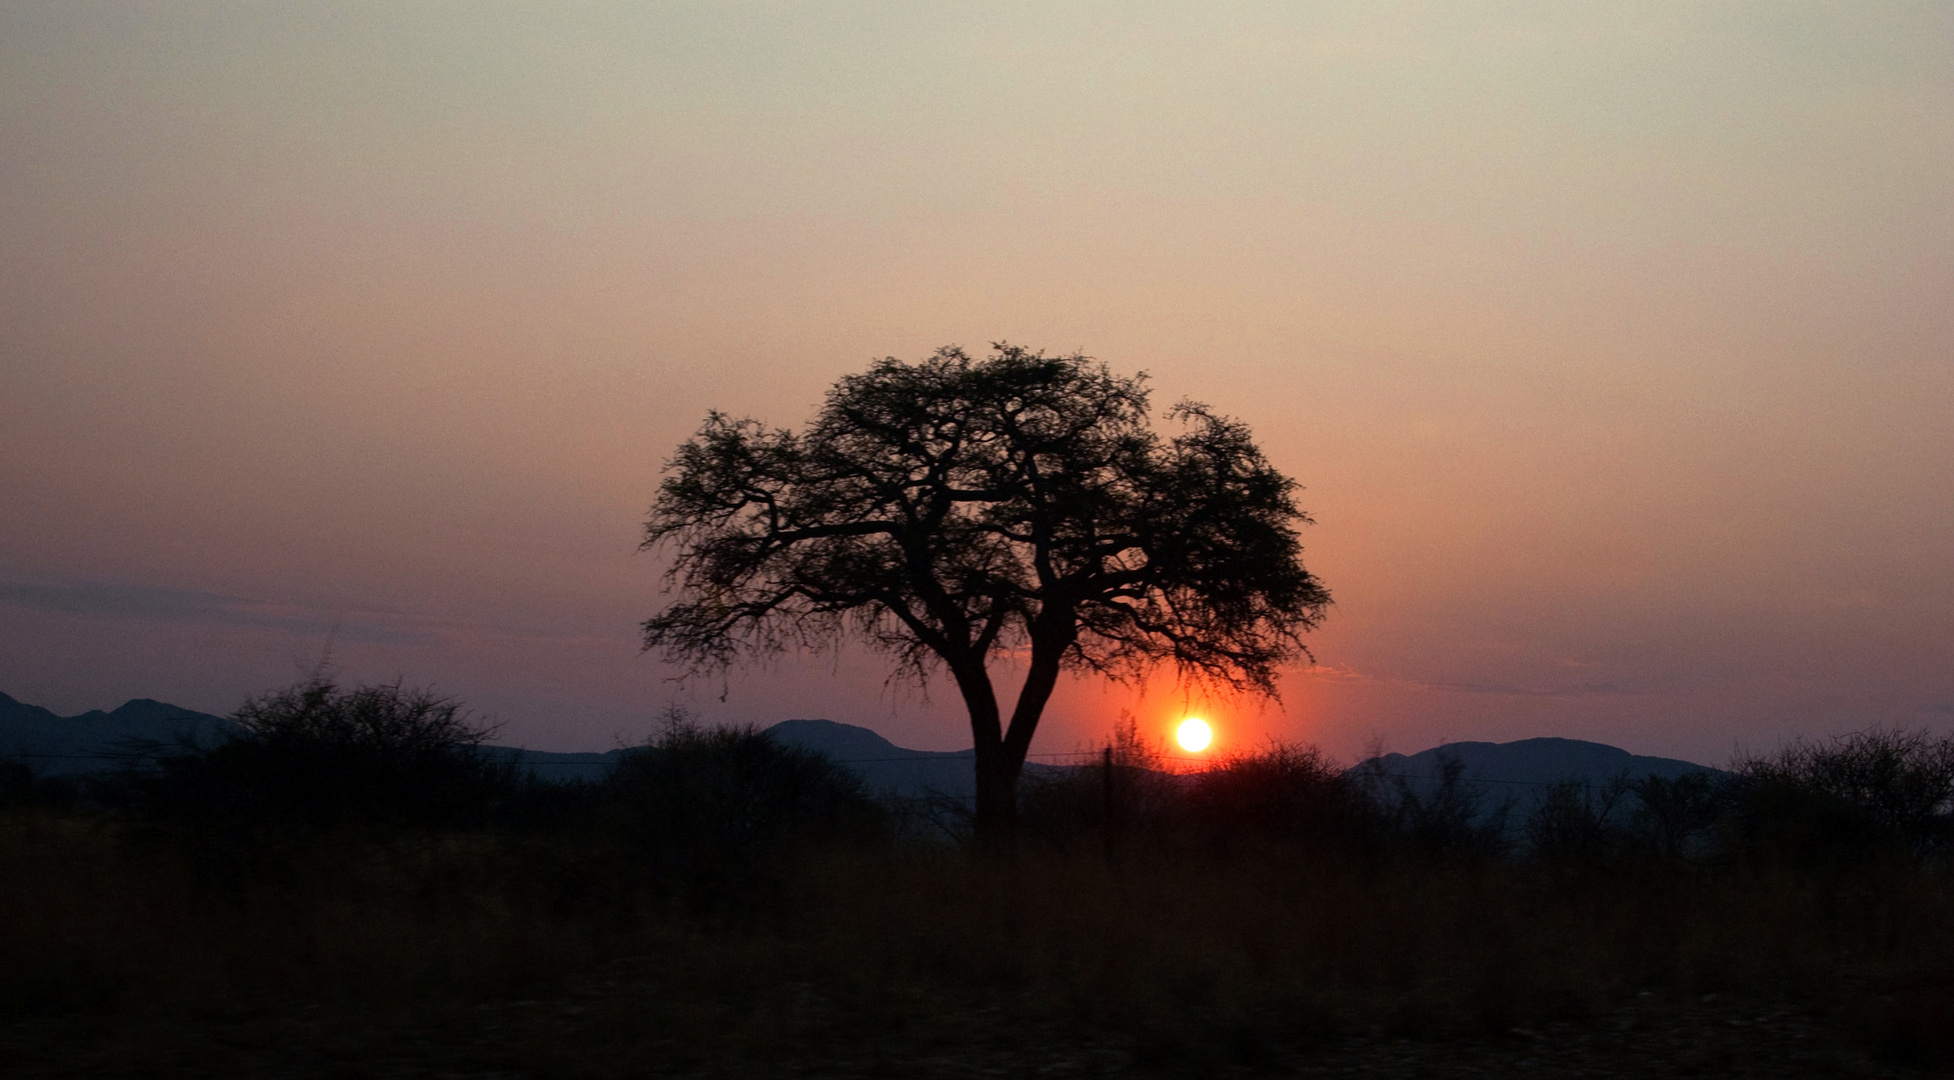 Namibias setting sun II